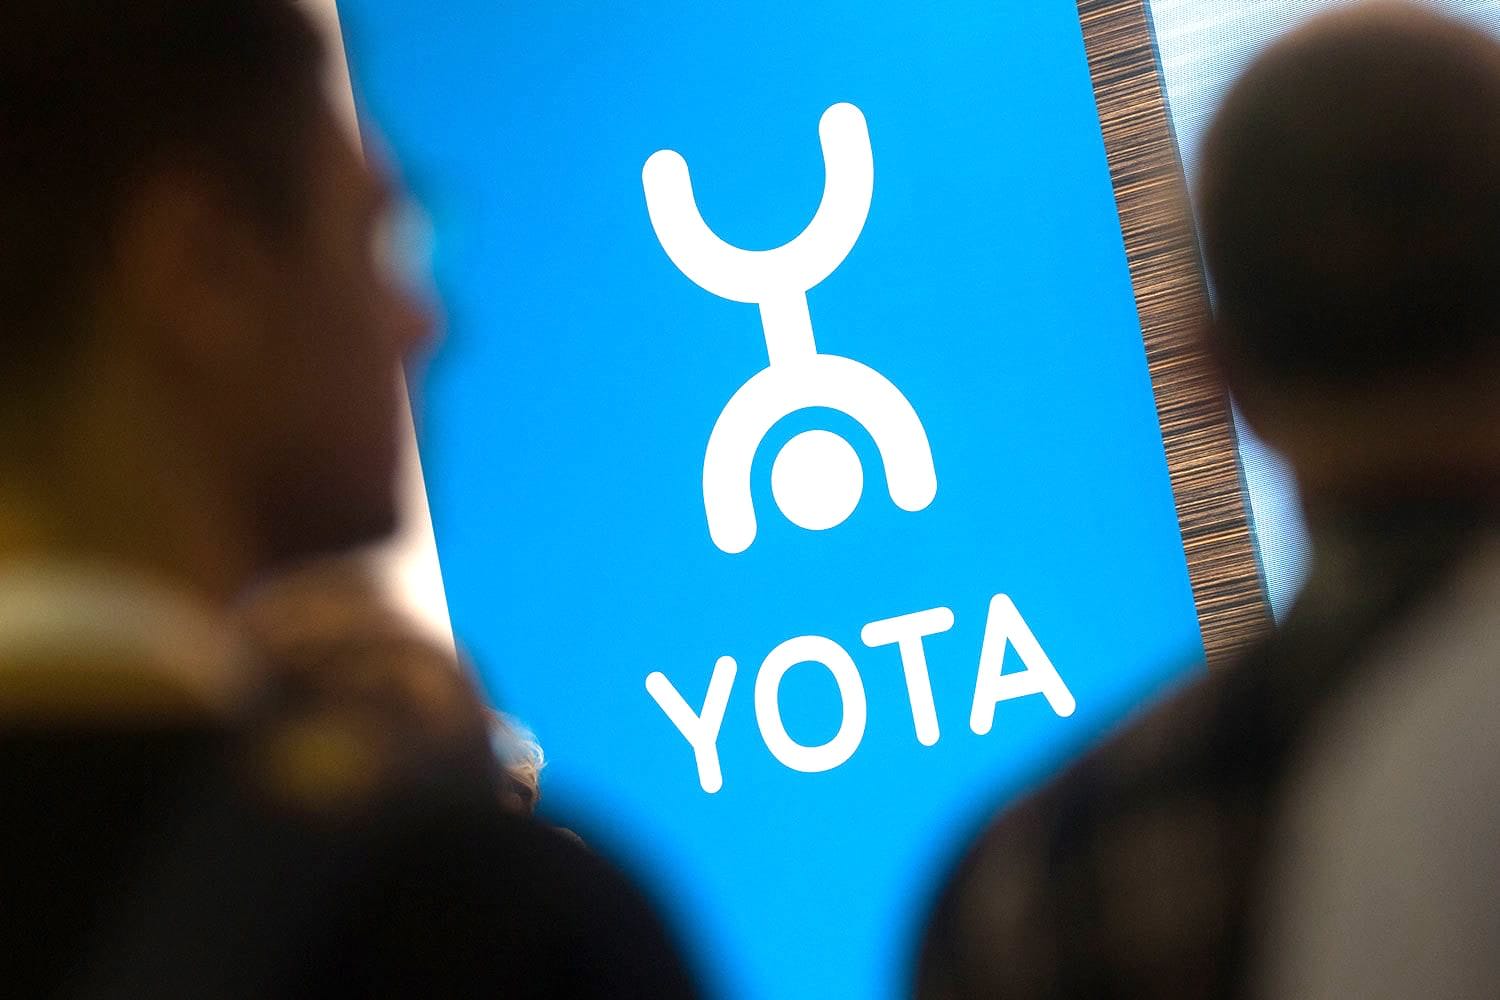 Yota даёт новым абонентам безлимит интернета и 2000 минут всего за 250 рублей